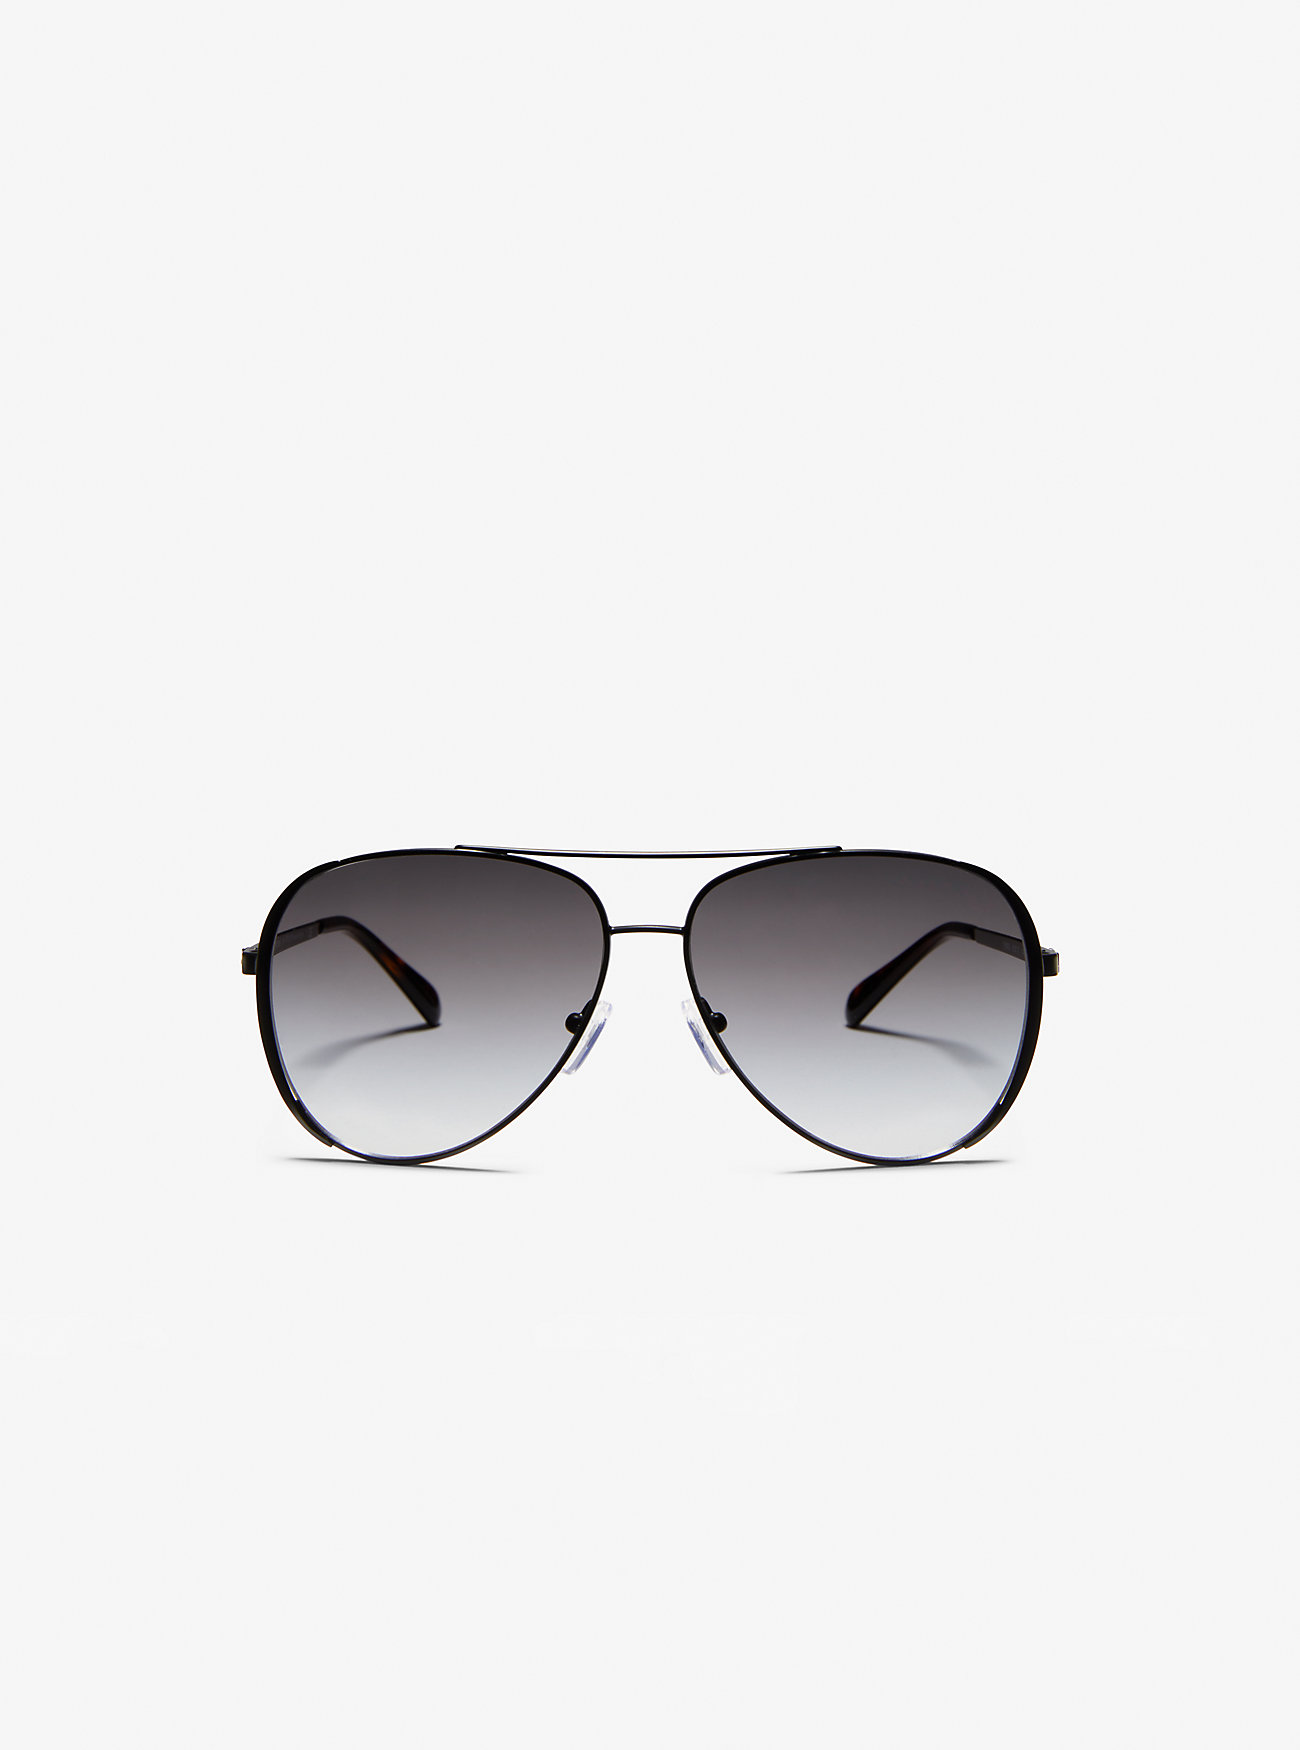 Челси Яркие солнцезащитные очки Michael Kors, черный ластик в футляре bright